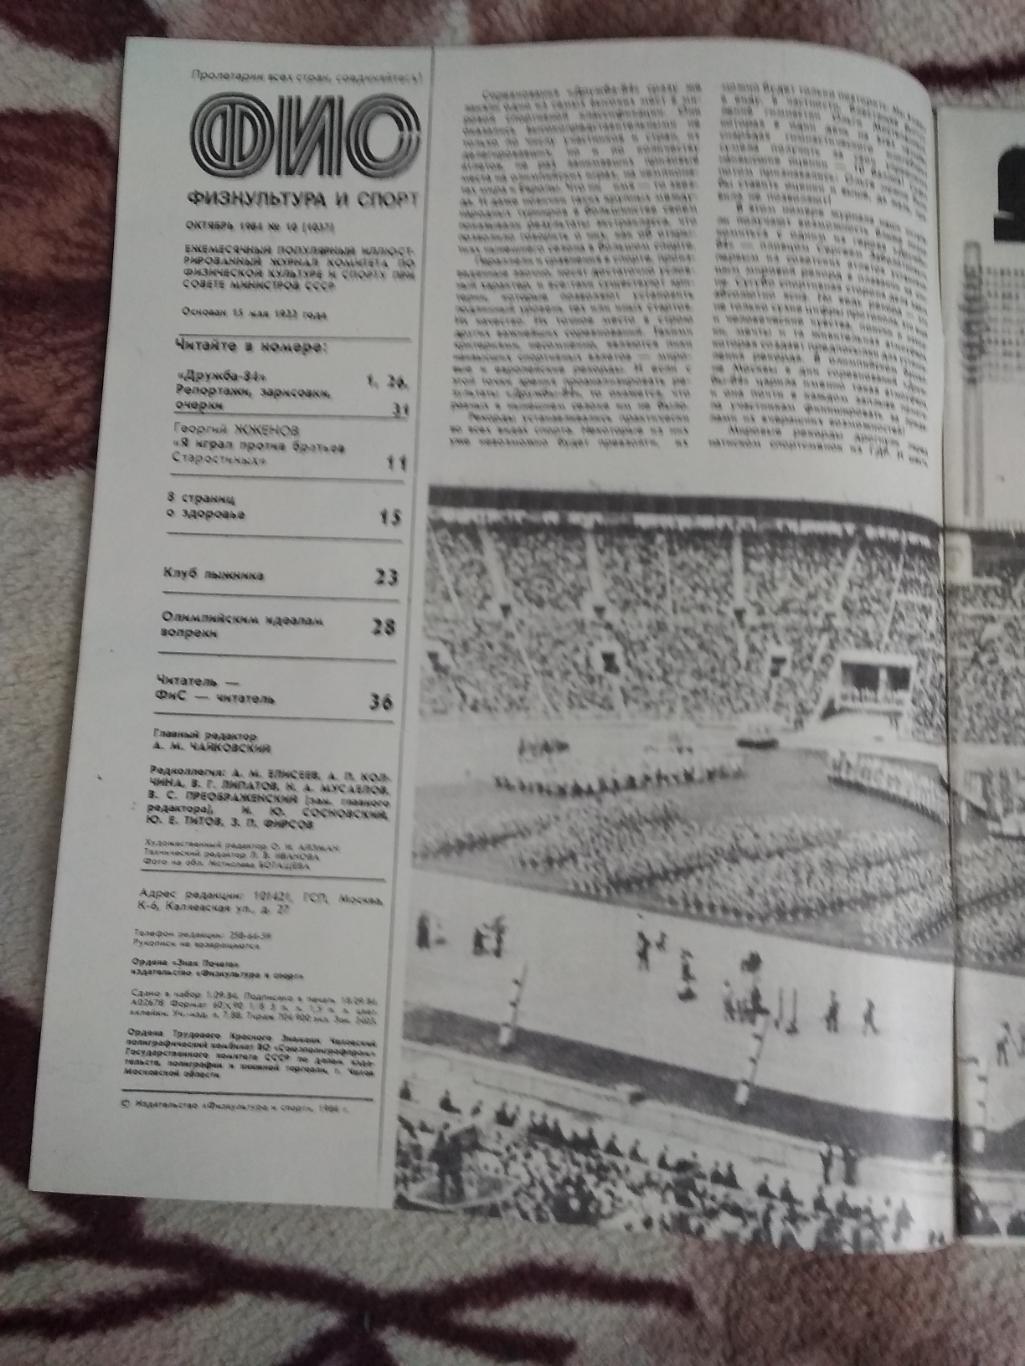 Журнал.Физкультура и спорт № 10 1984 г. (ФиС). 1